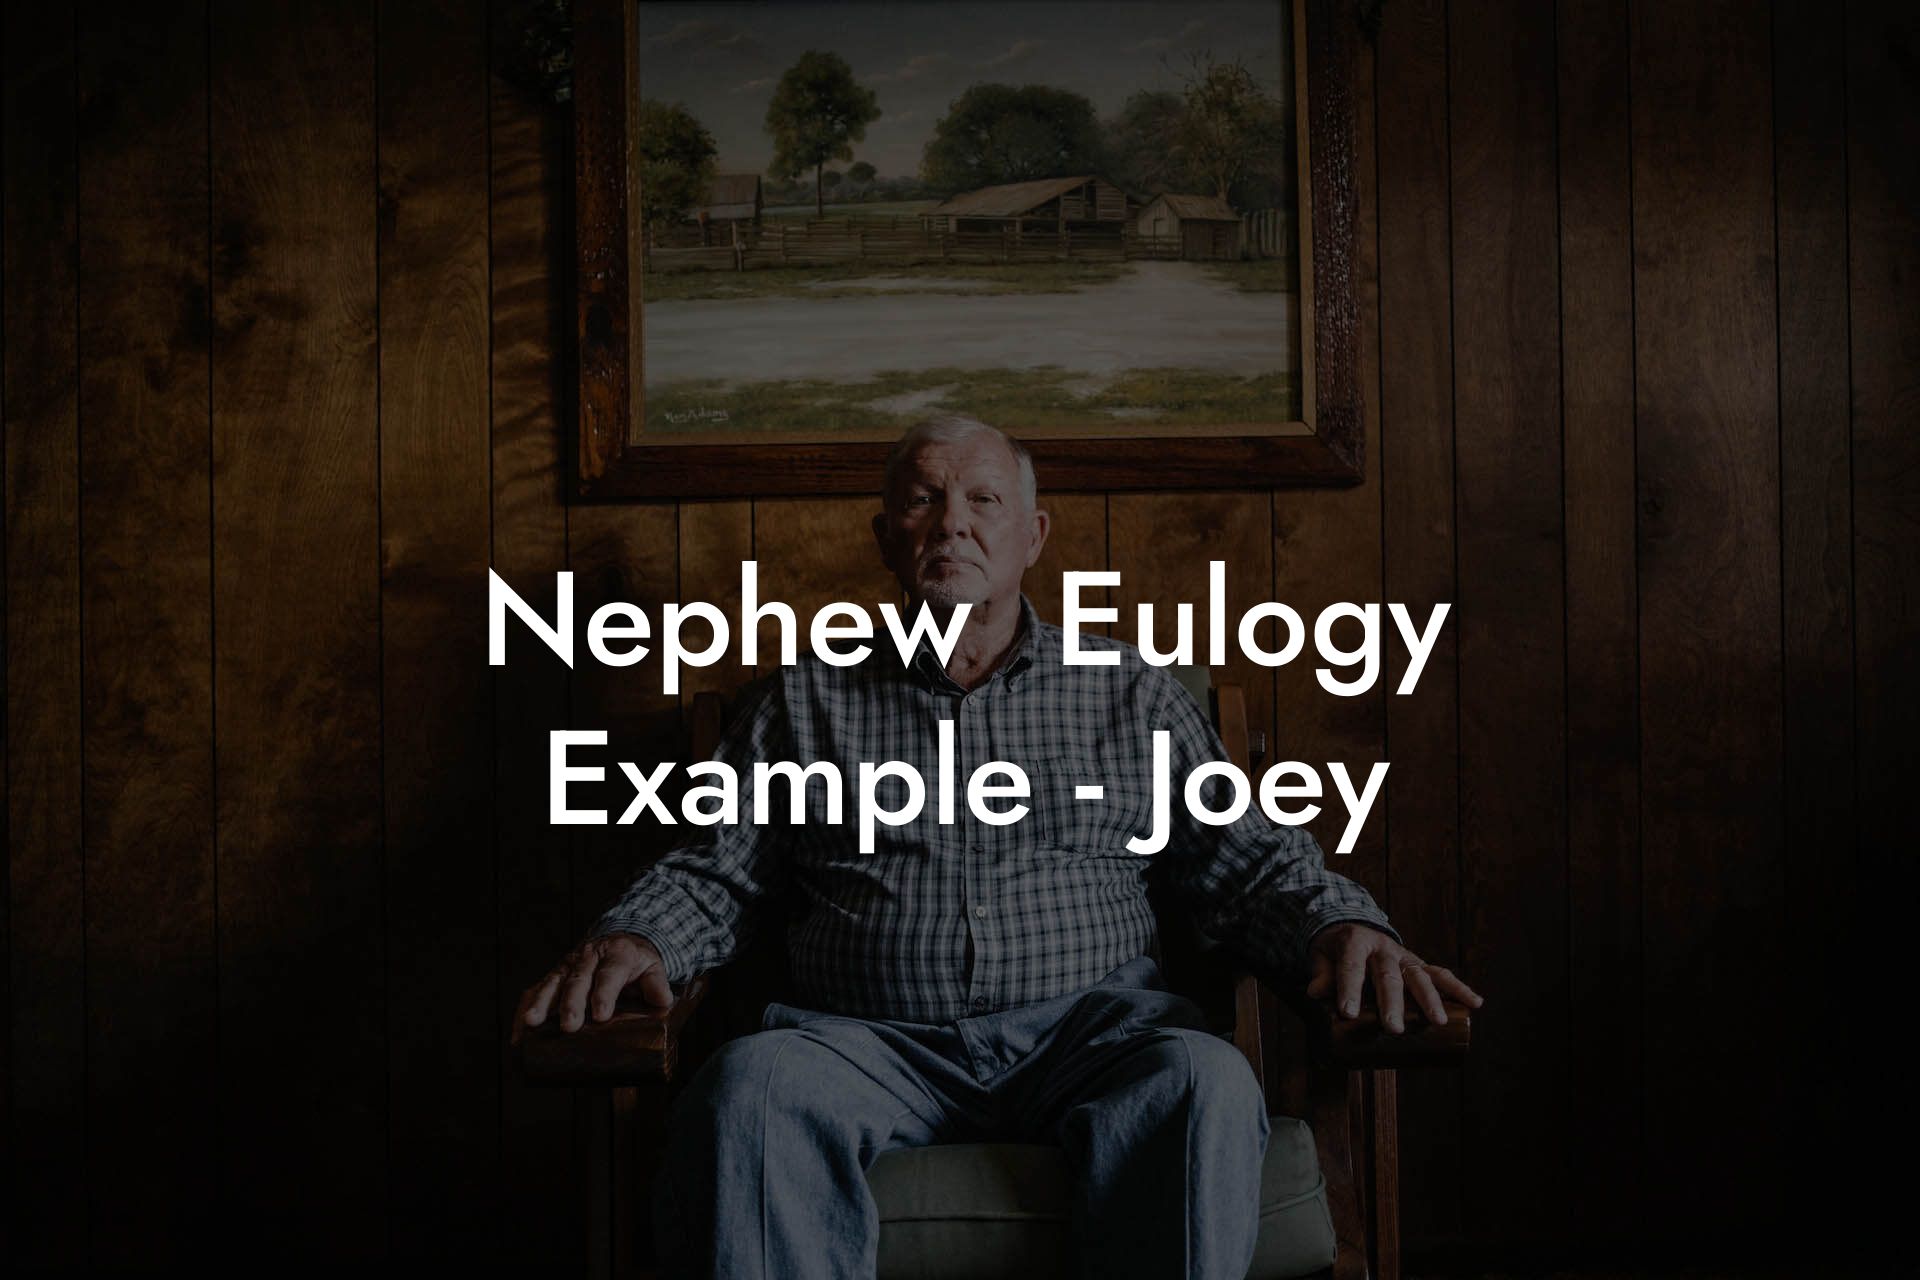 Nephew  Eulogy Example - Joey